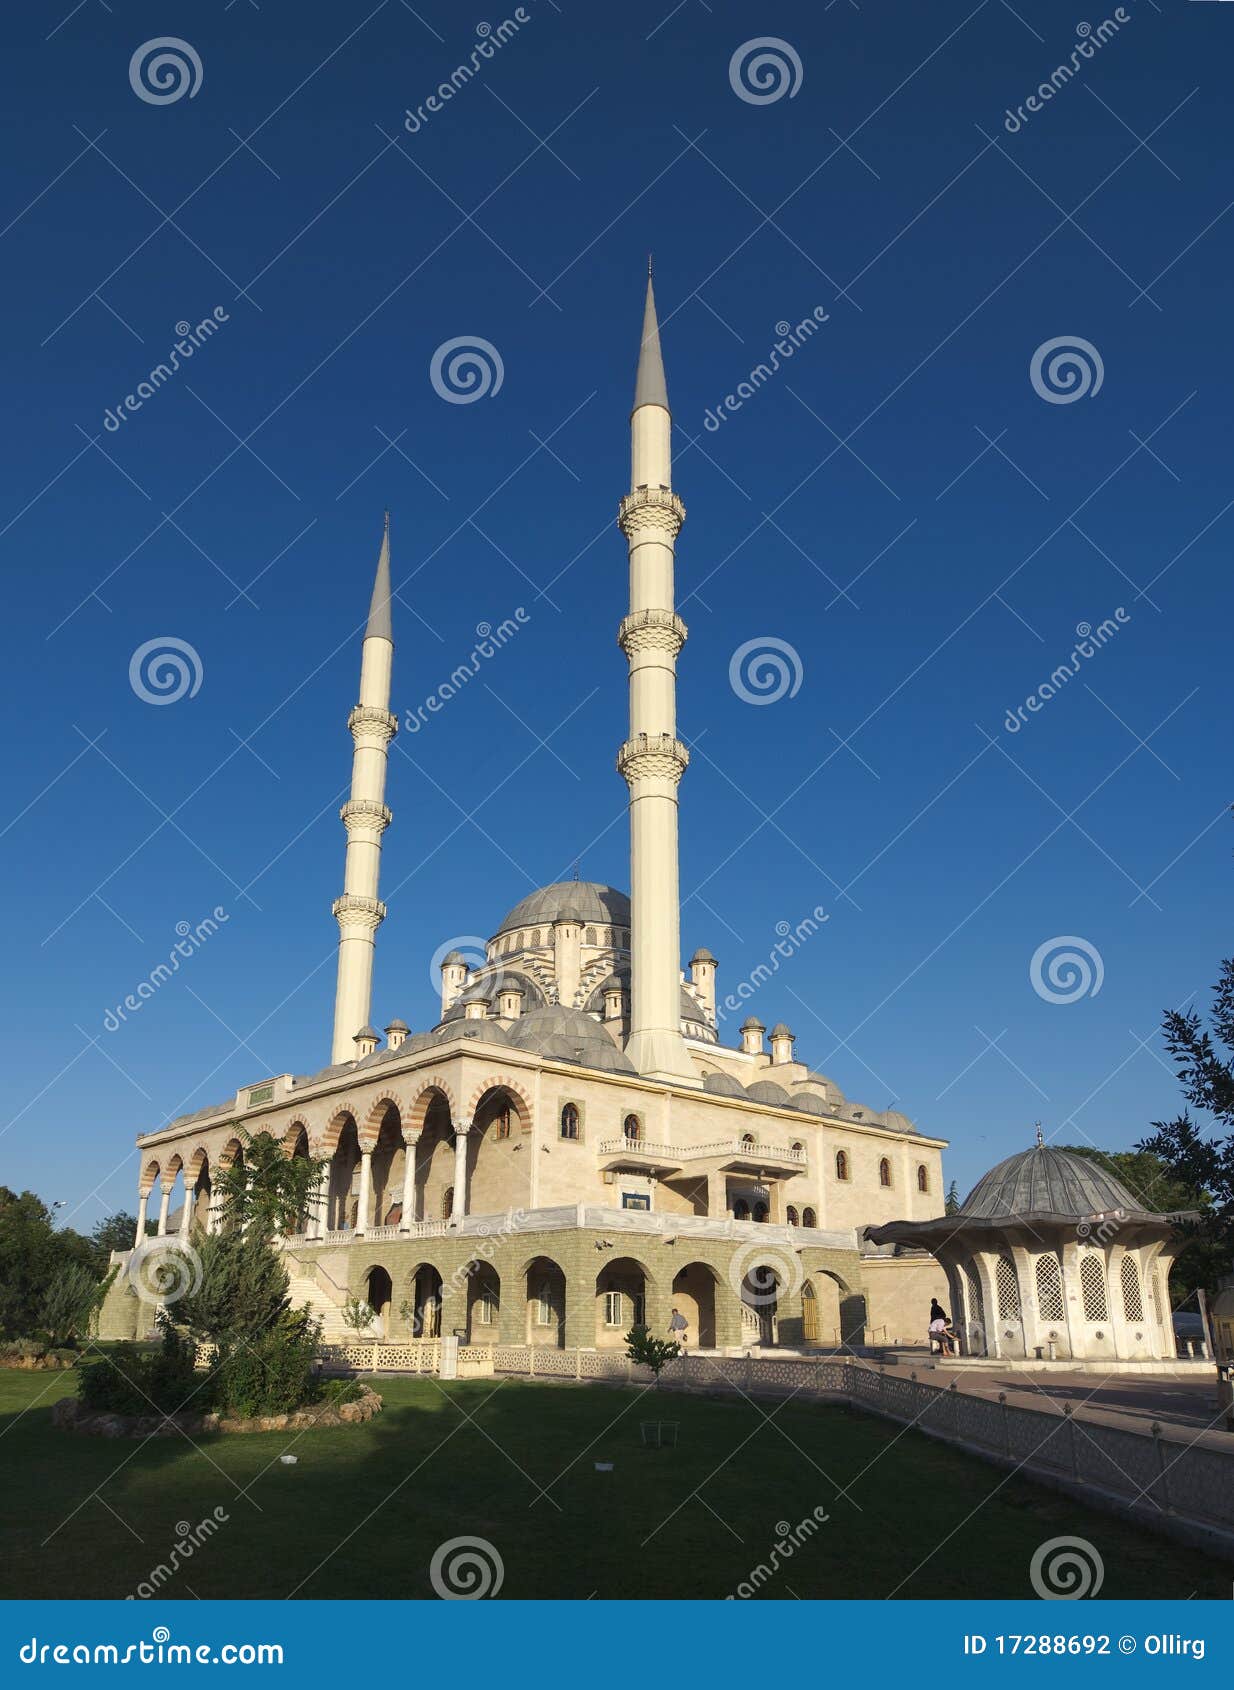 haci veys zade mosque in konya